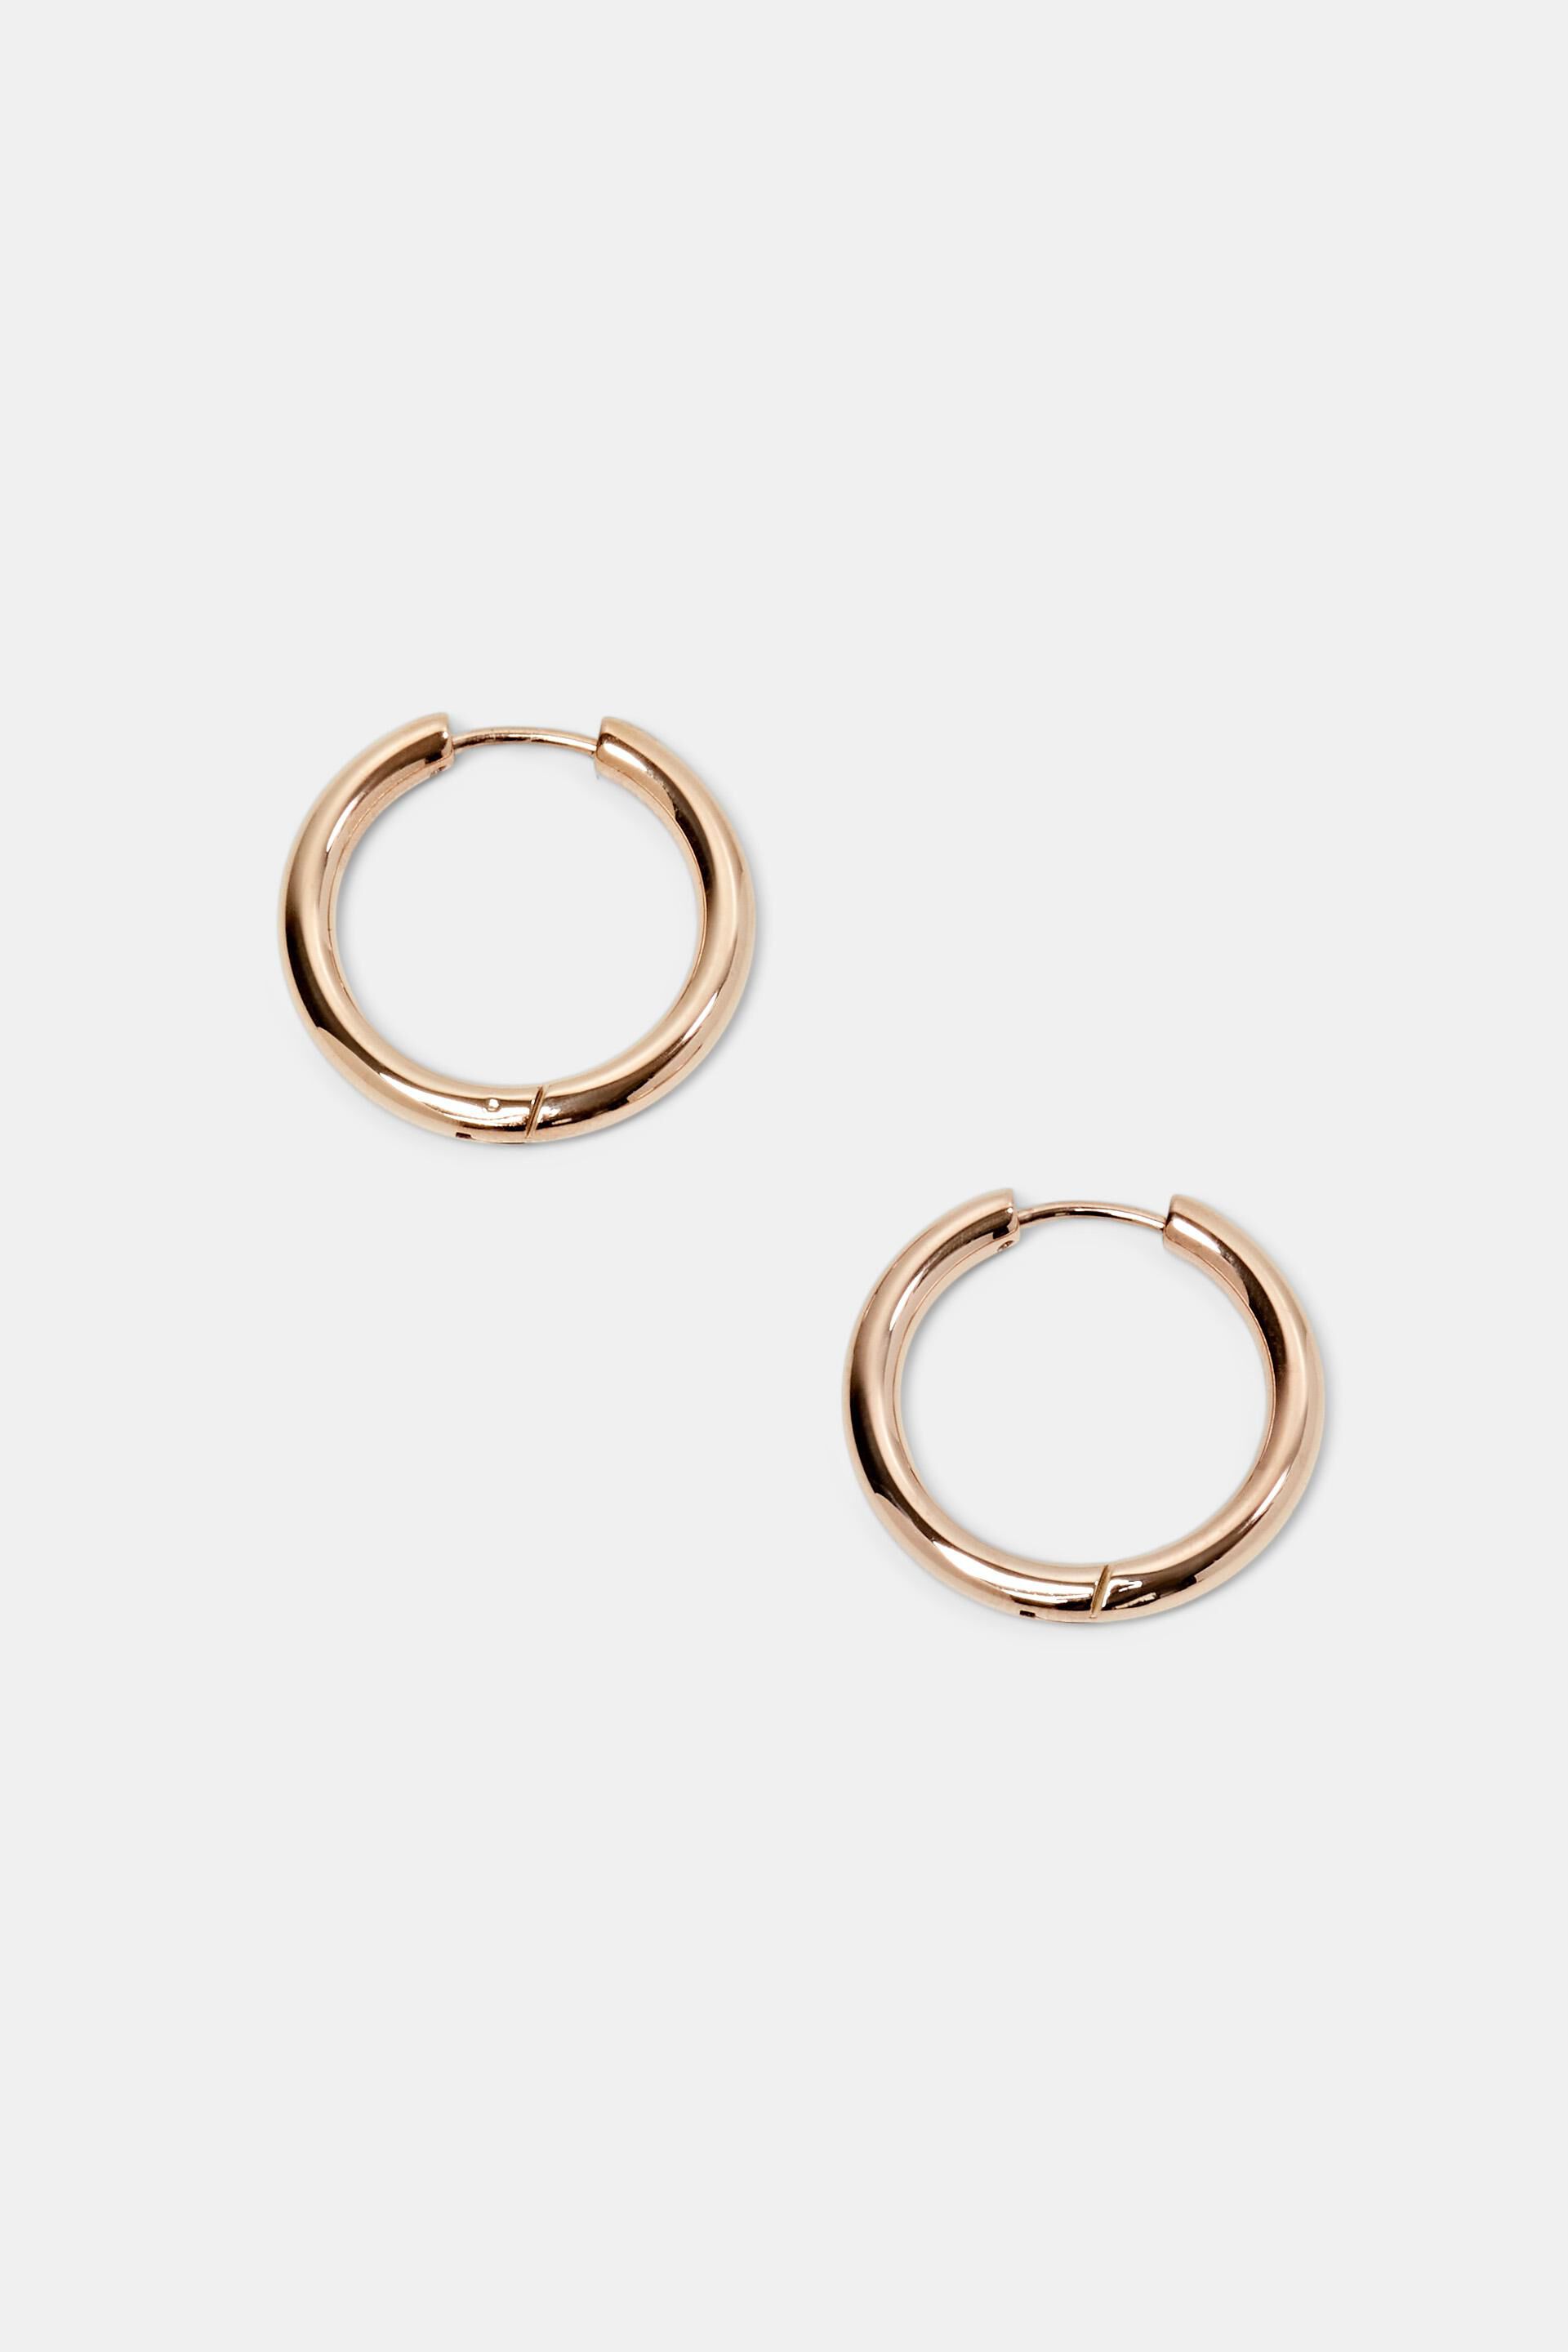 Esprit earrings, stainless Small hoop steel